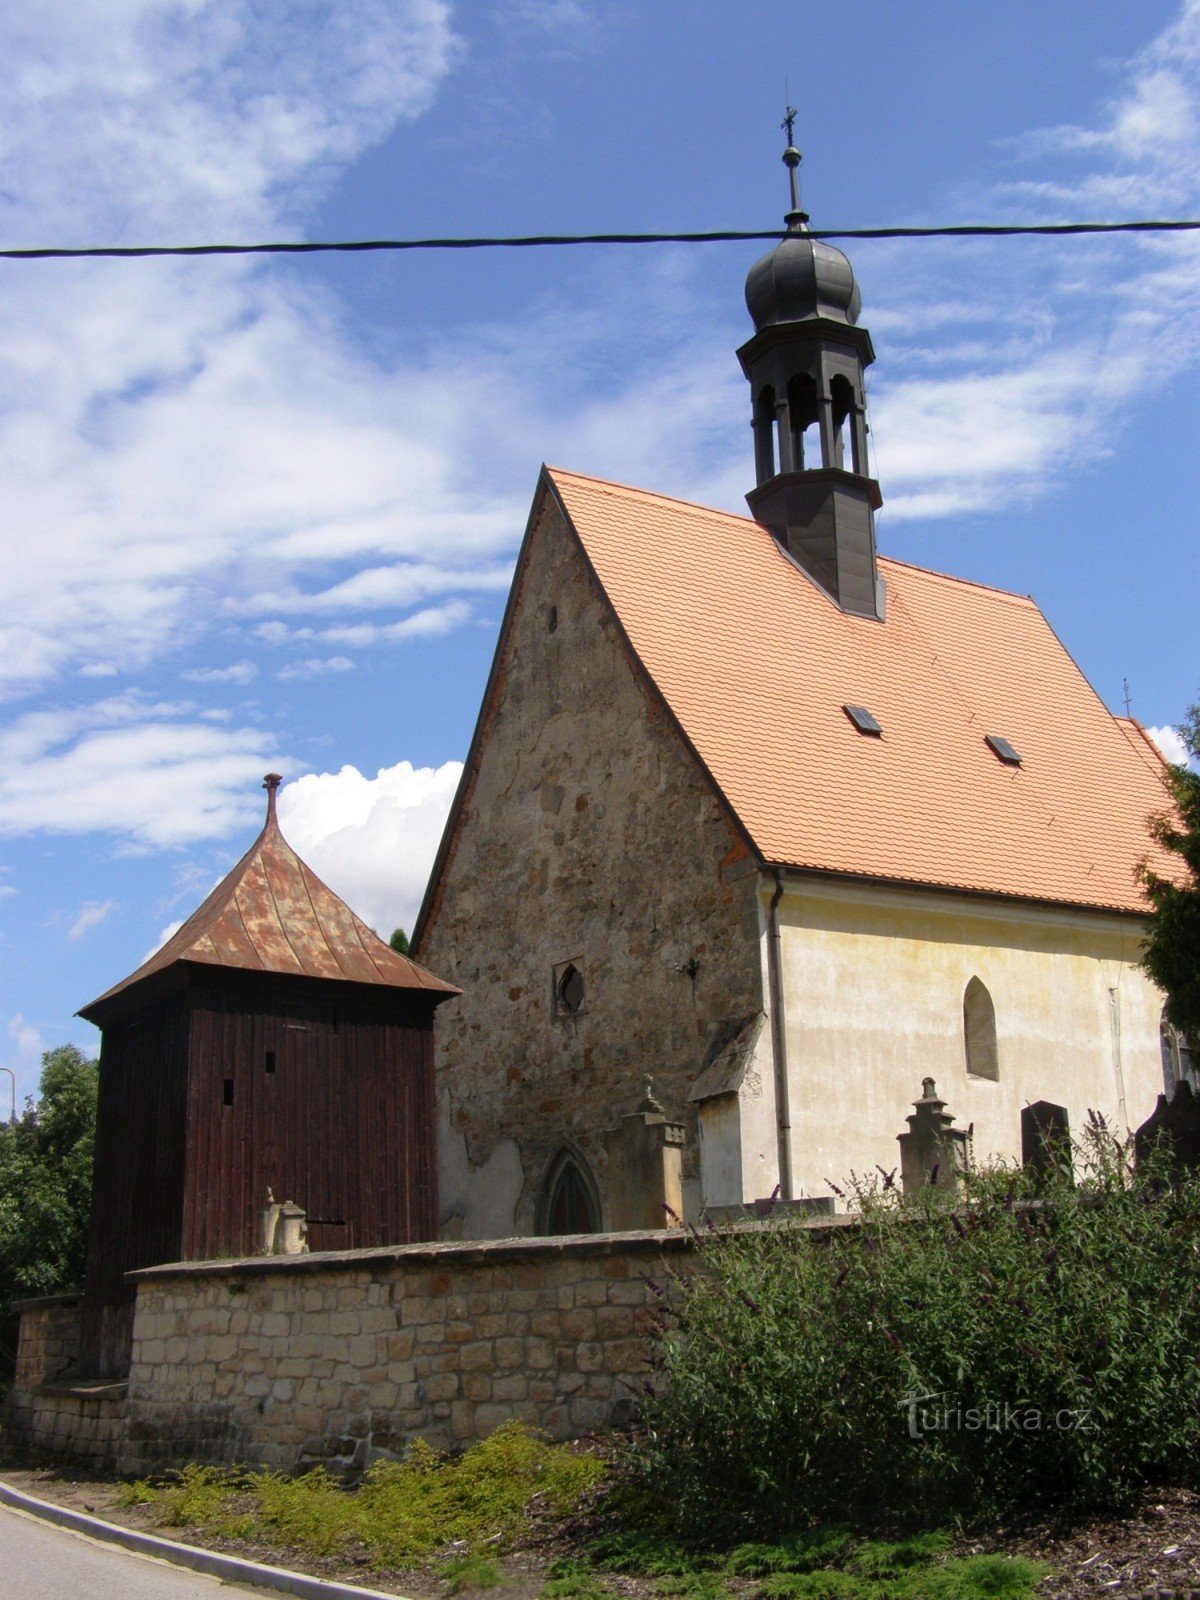 Nadslav - cerkev sv. Prokopij